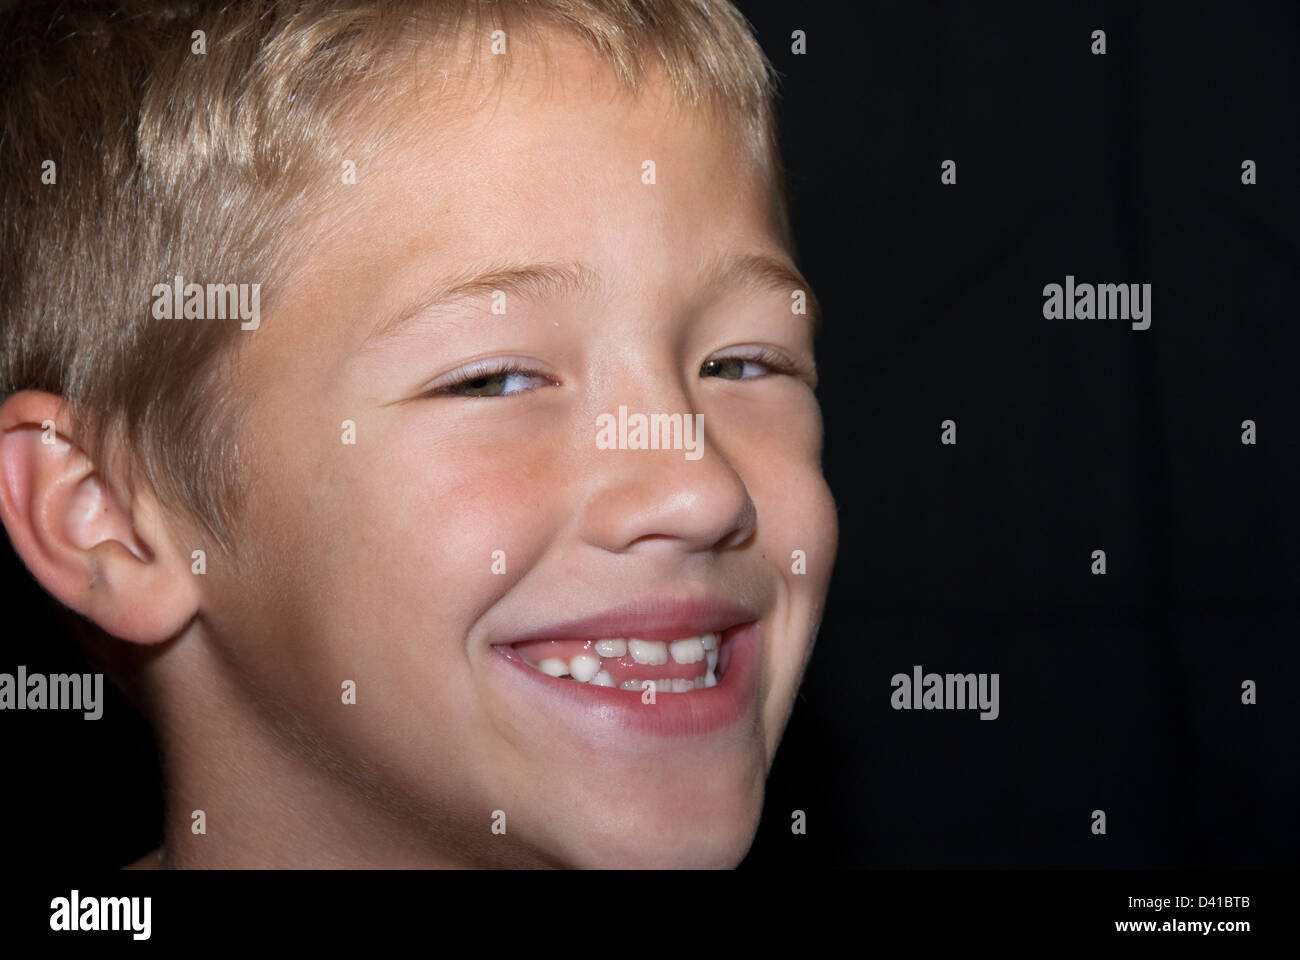 Lächelnd und glücklich junge auf schwarzem Hintergrund. Stockfoto